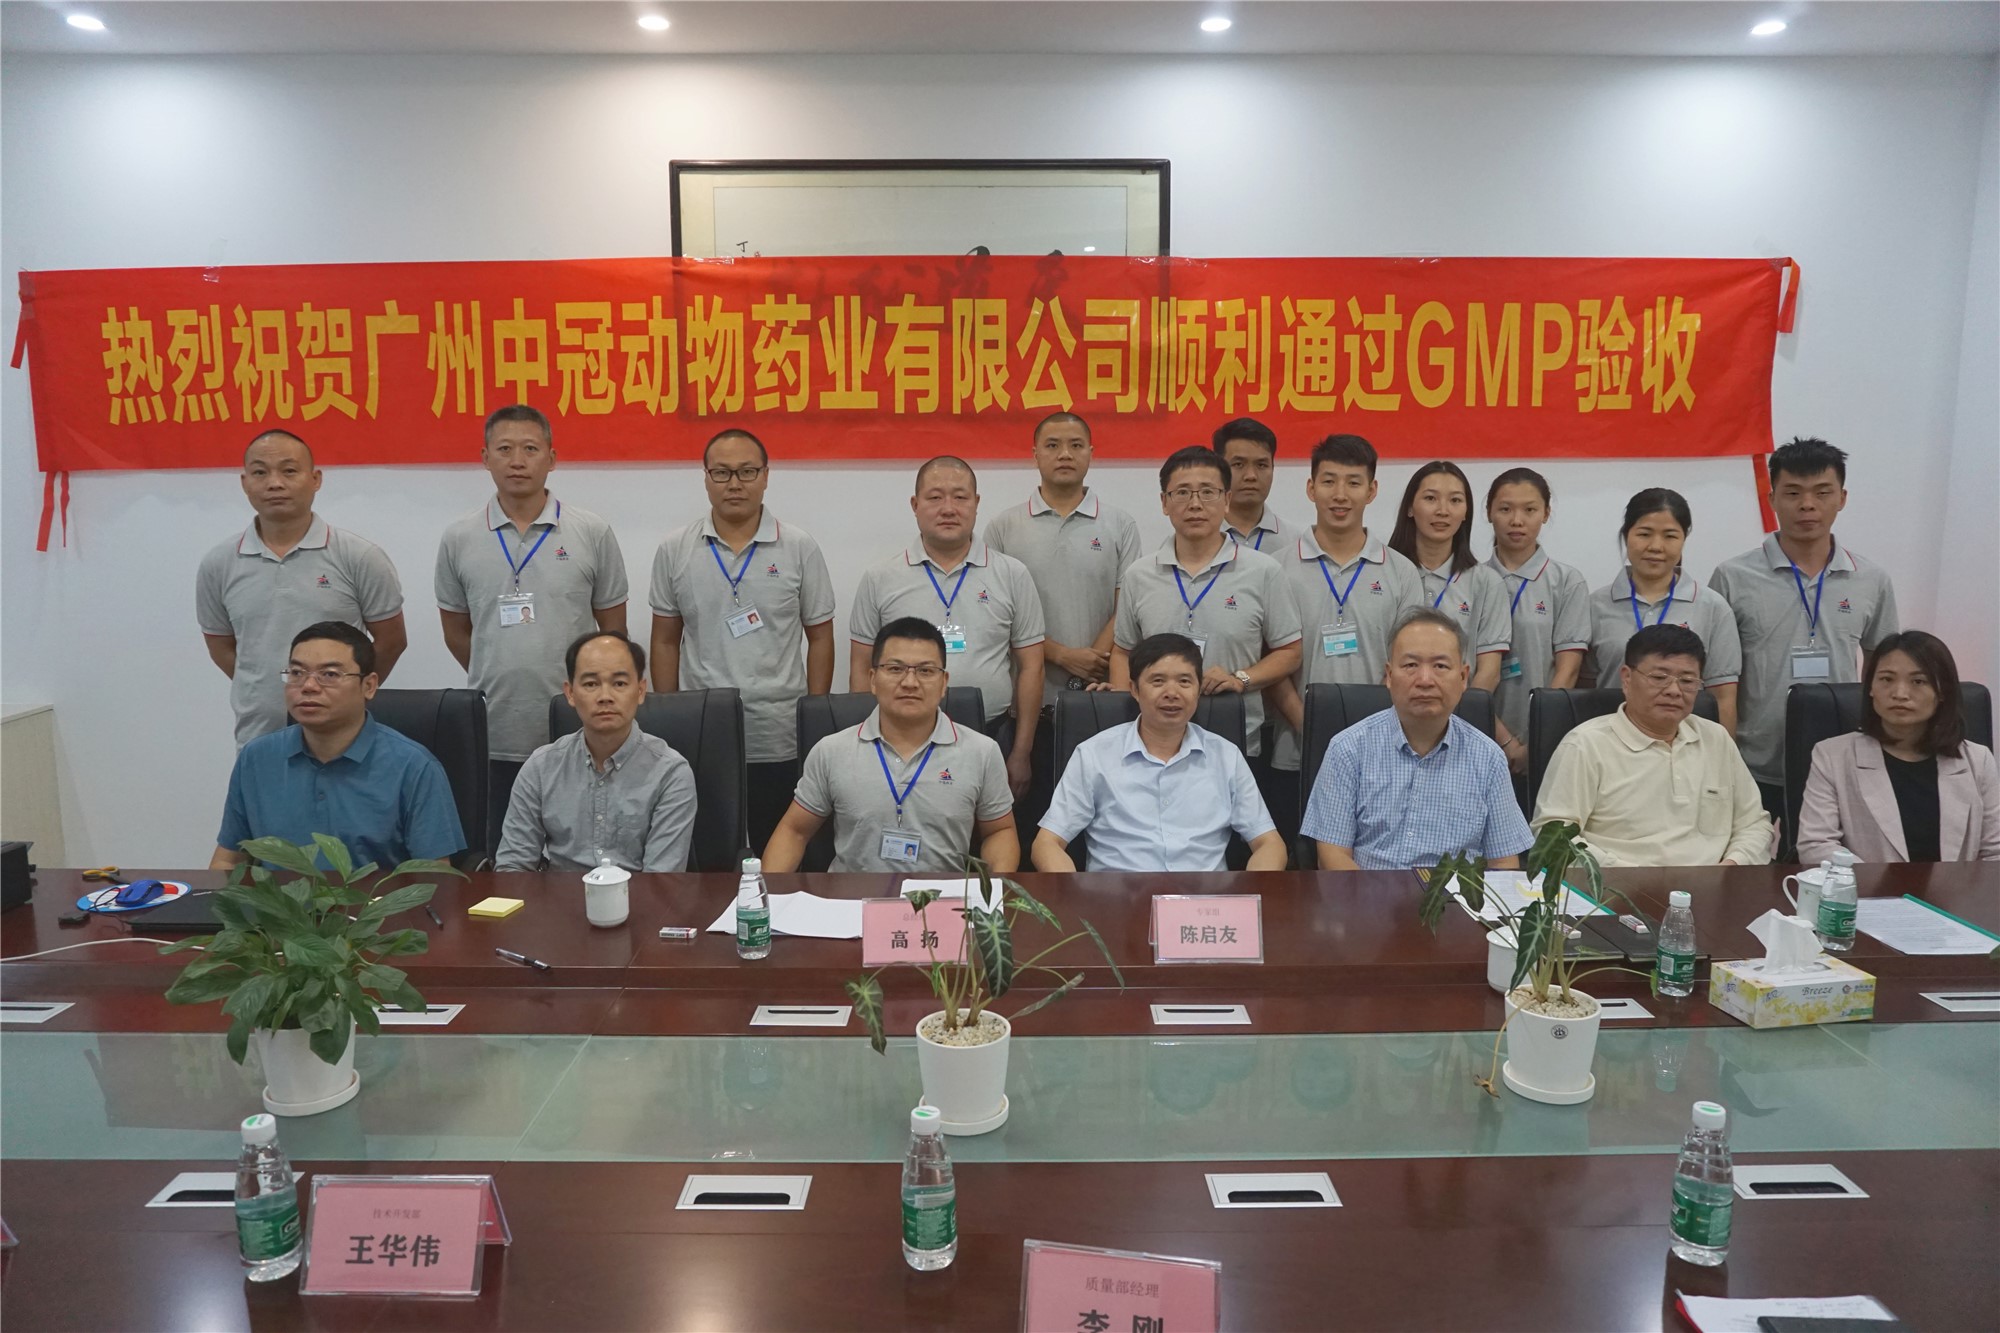 热烈祝贺广州中冠动物药业有限公司 新生产基地顺利通过兽药GMP验收